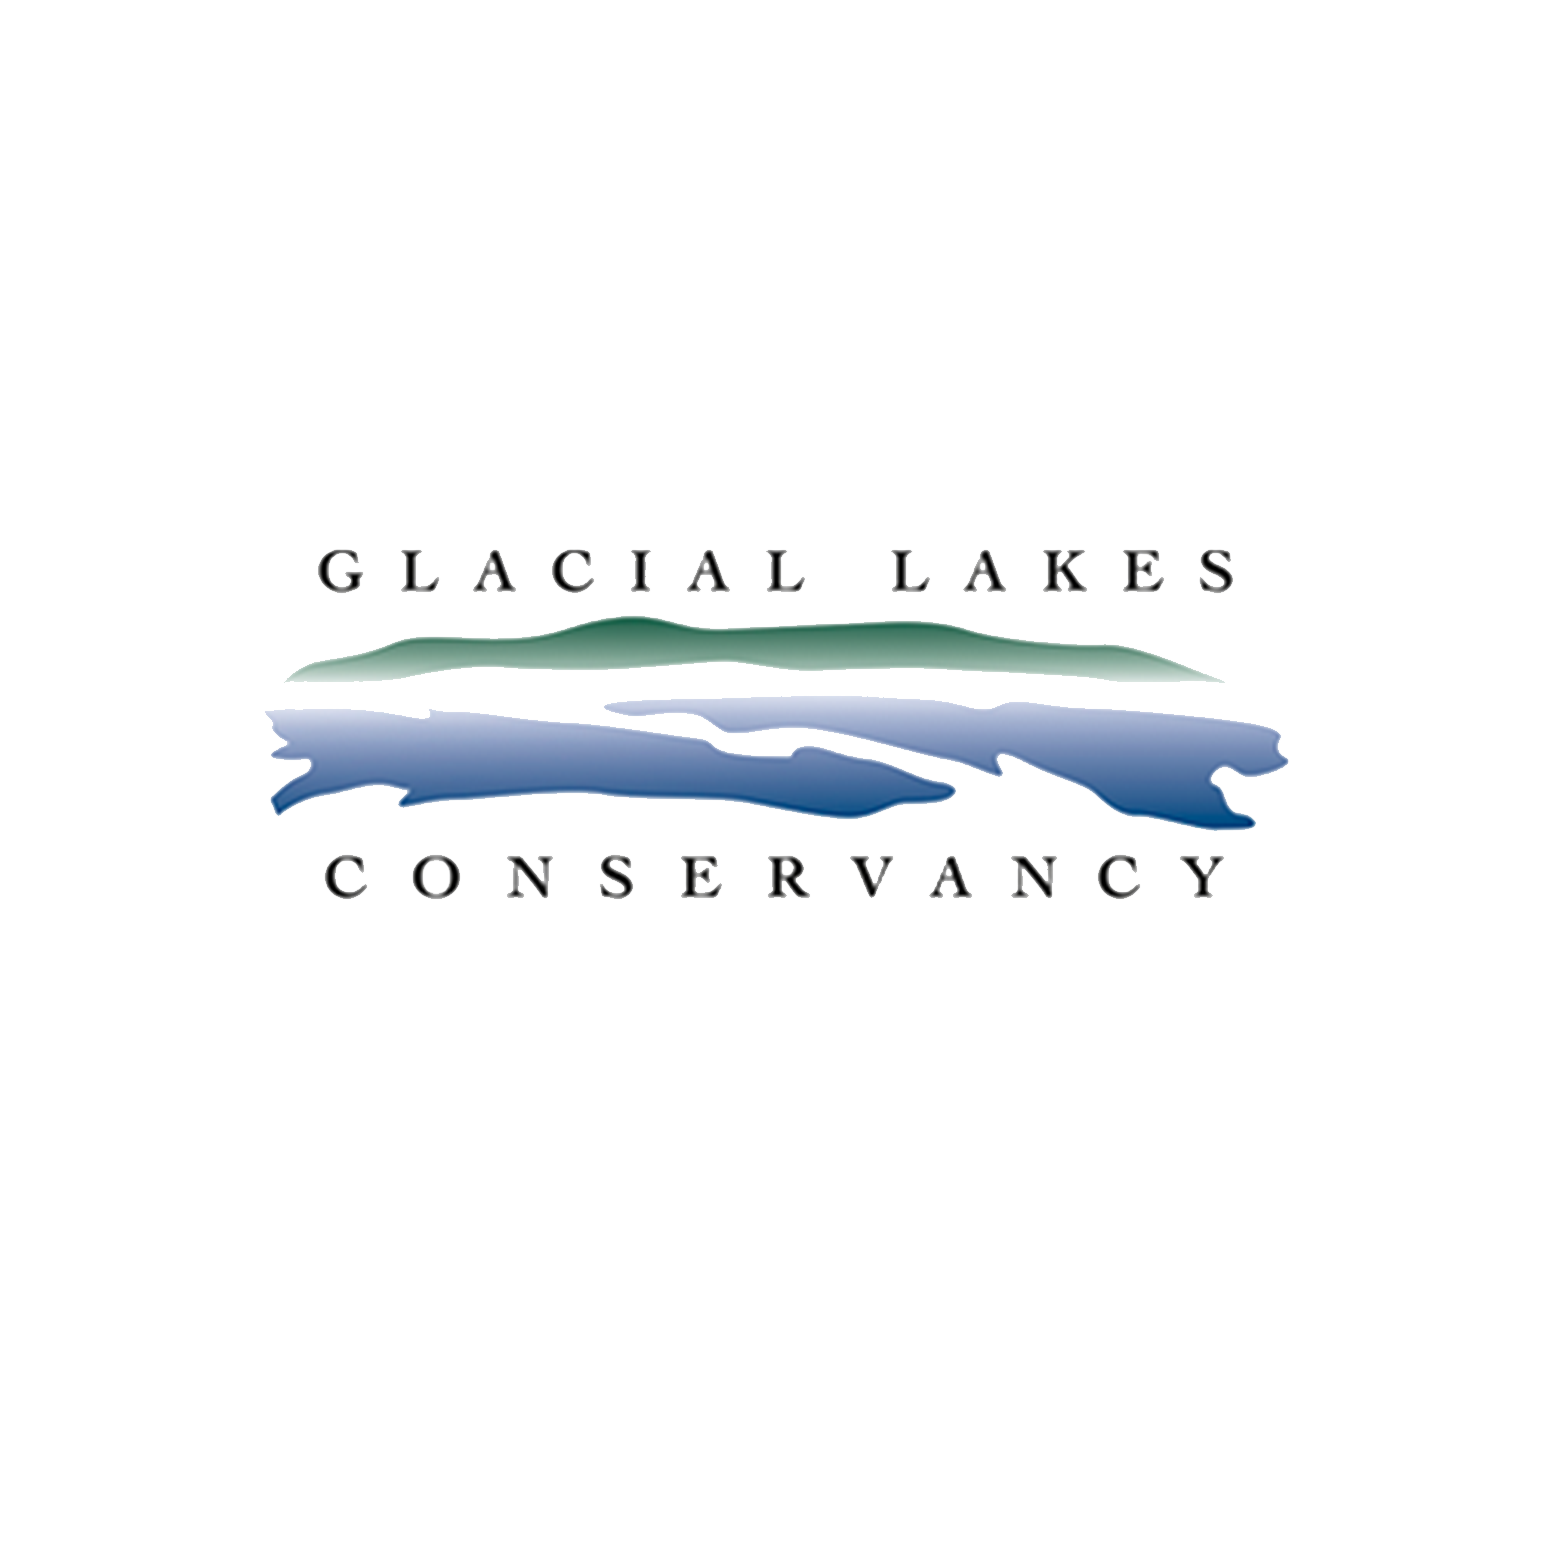 Glacial Lakes Conservancy logo